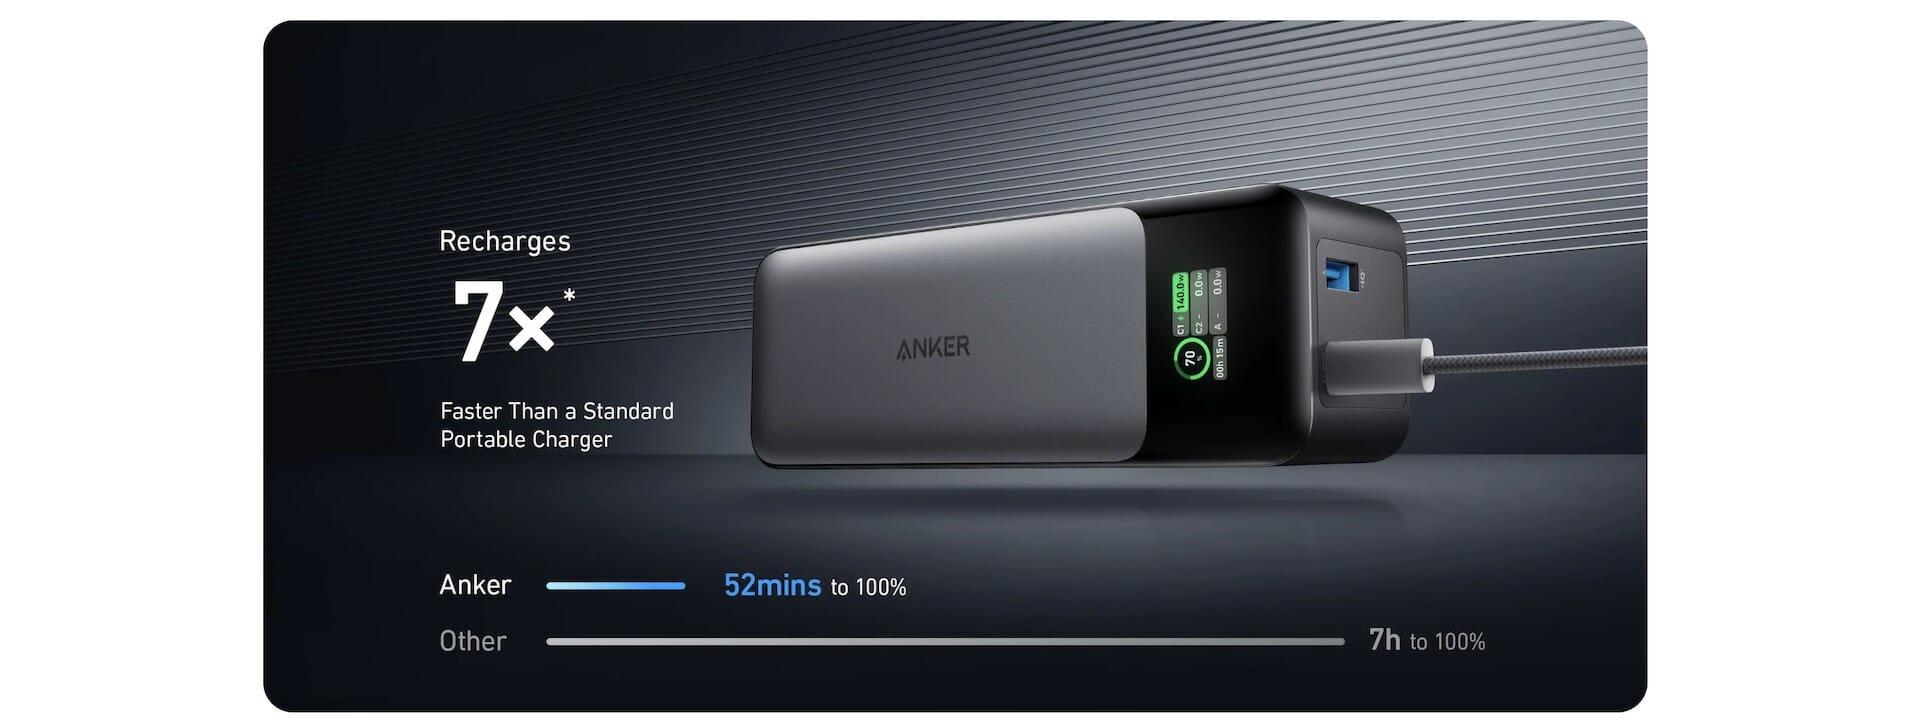 Anker випустив павербанк, здатний швидко зарядити не тільки смартфон, а й лептоп